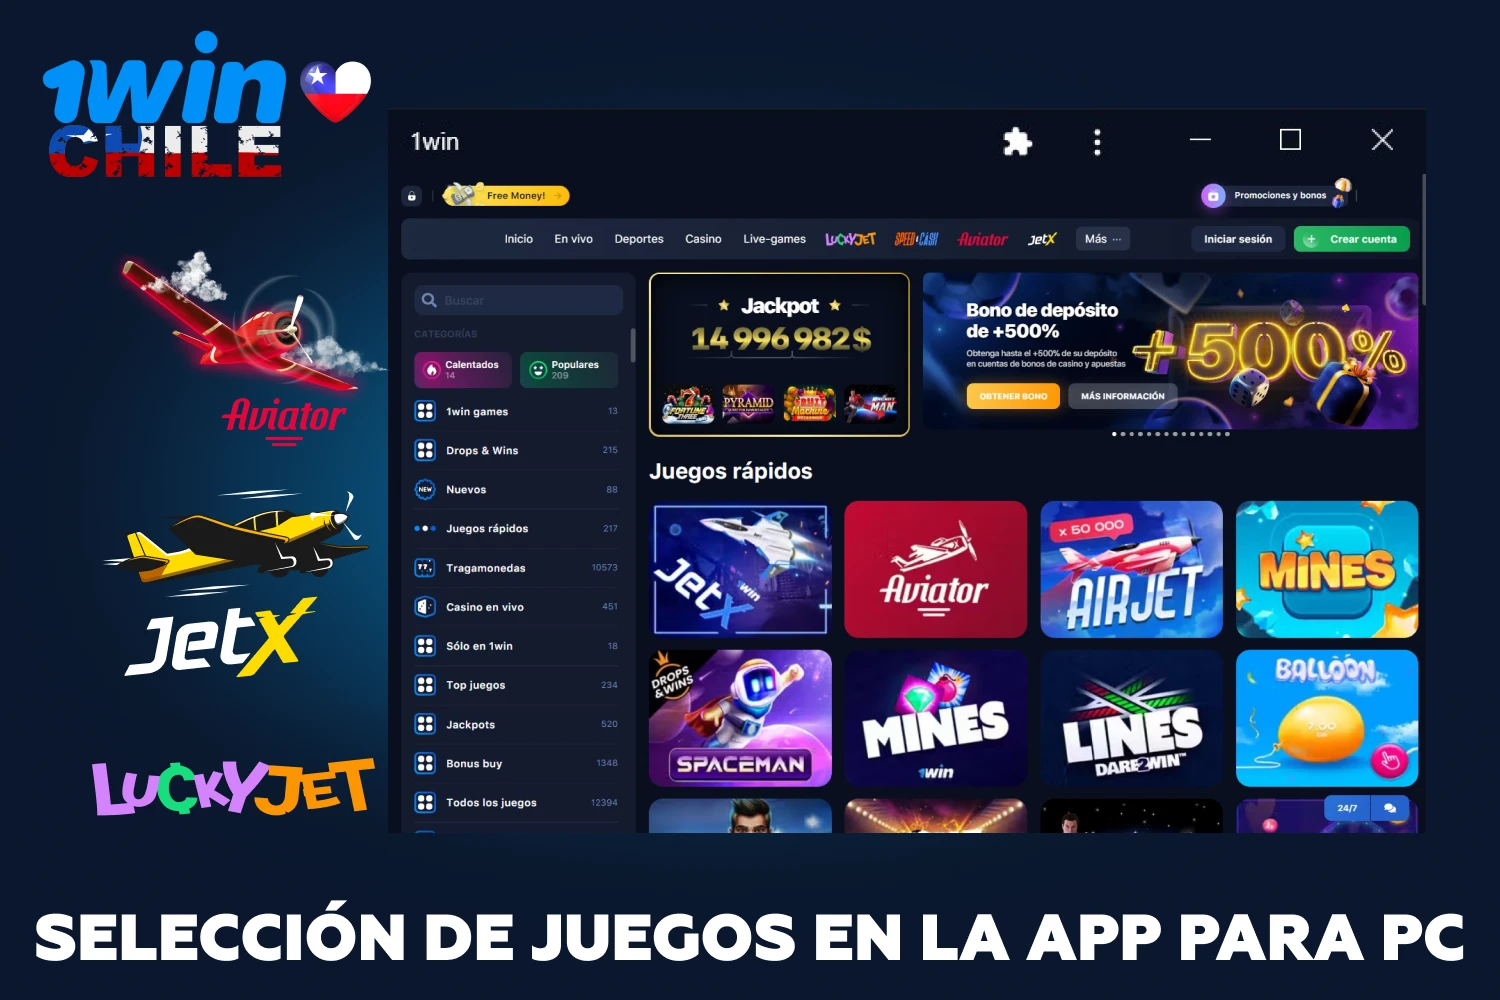 El software de escritorio de 1win ofrece a los jugadores de Chile una amplia gama de juegos clasificados en varias secciones